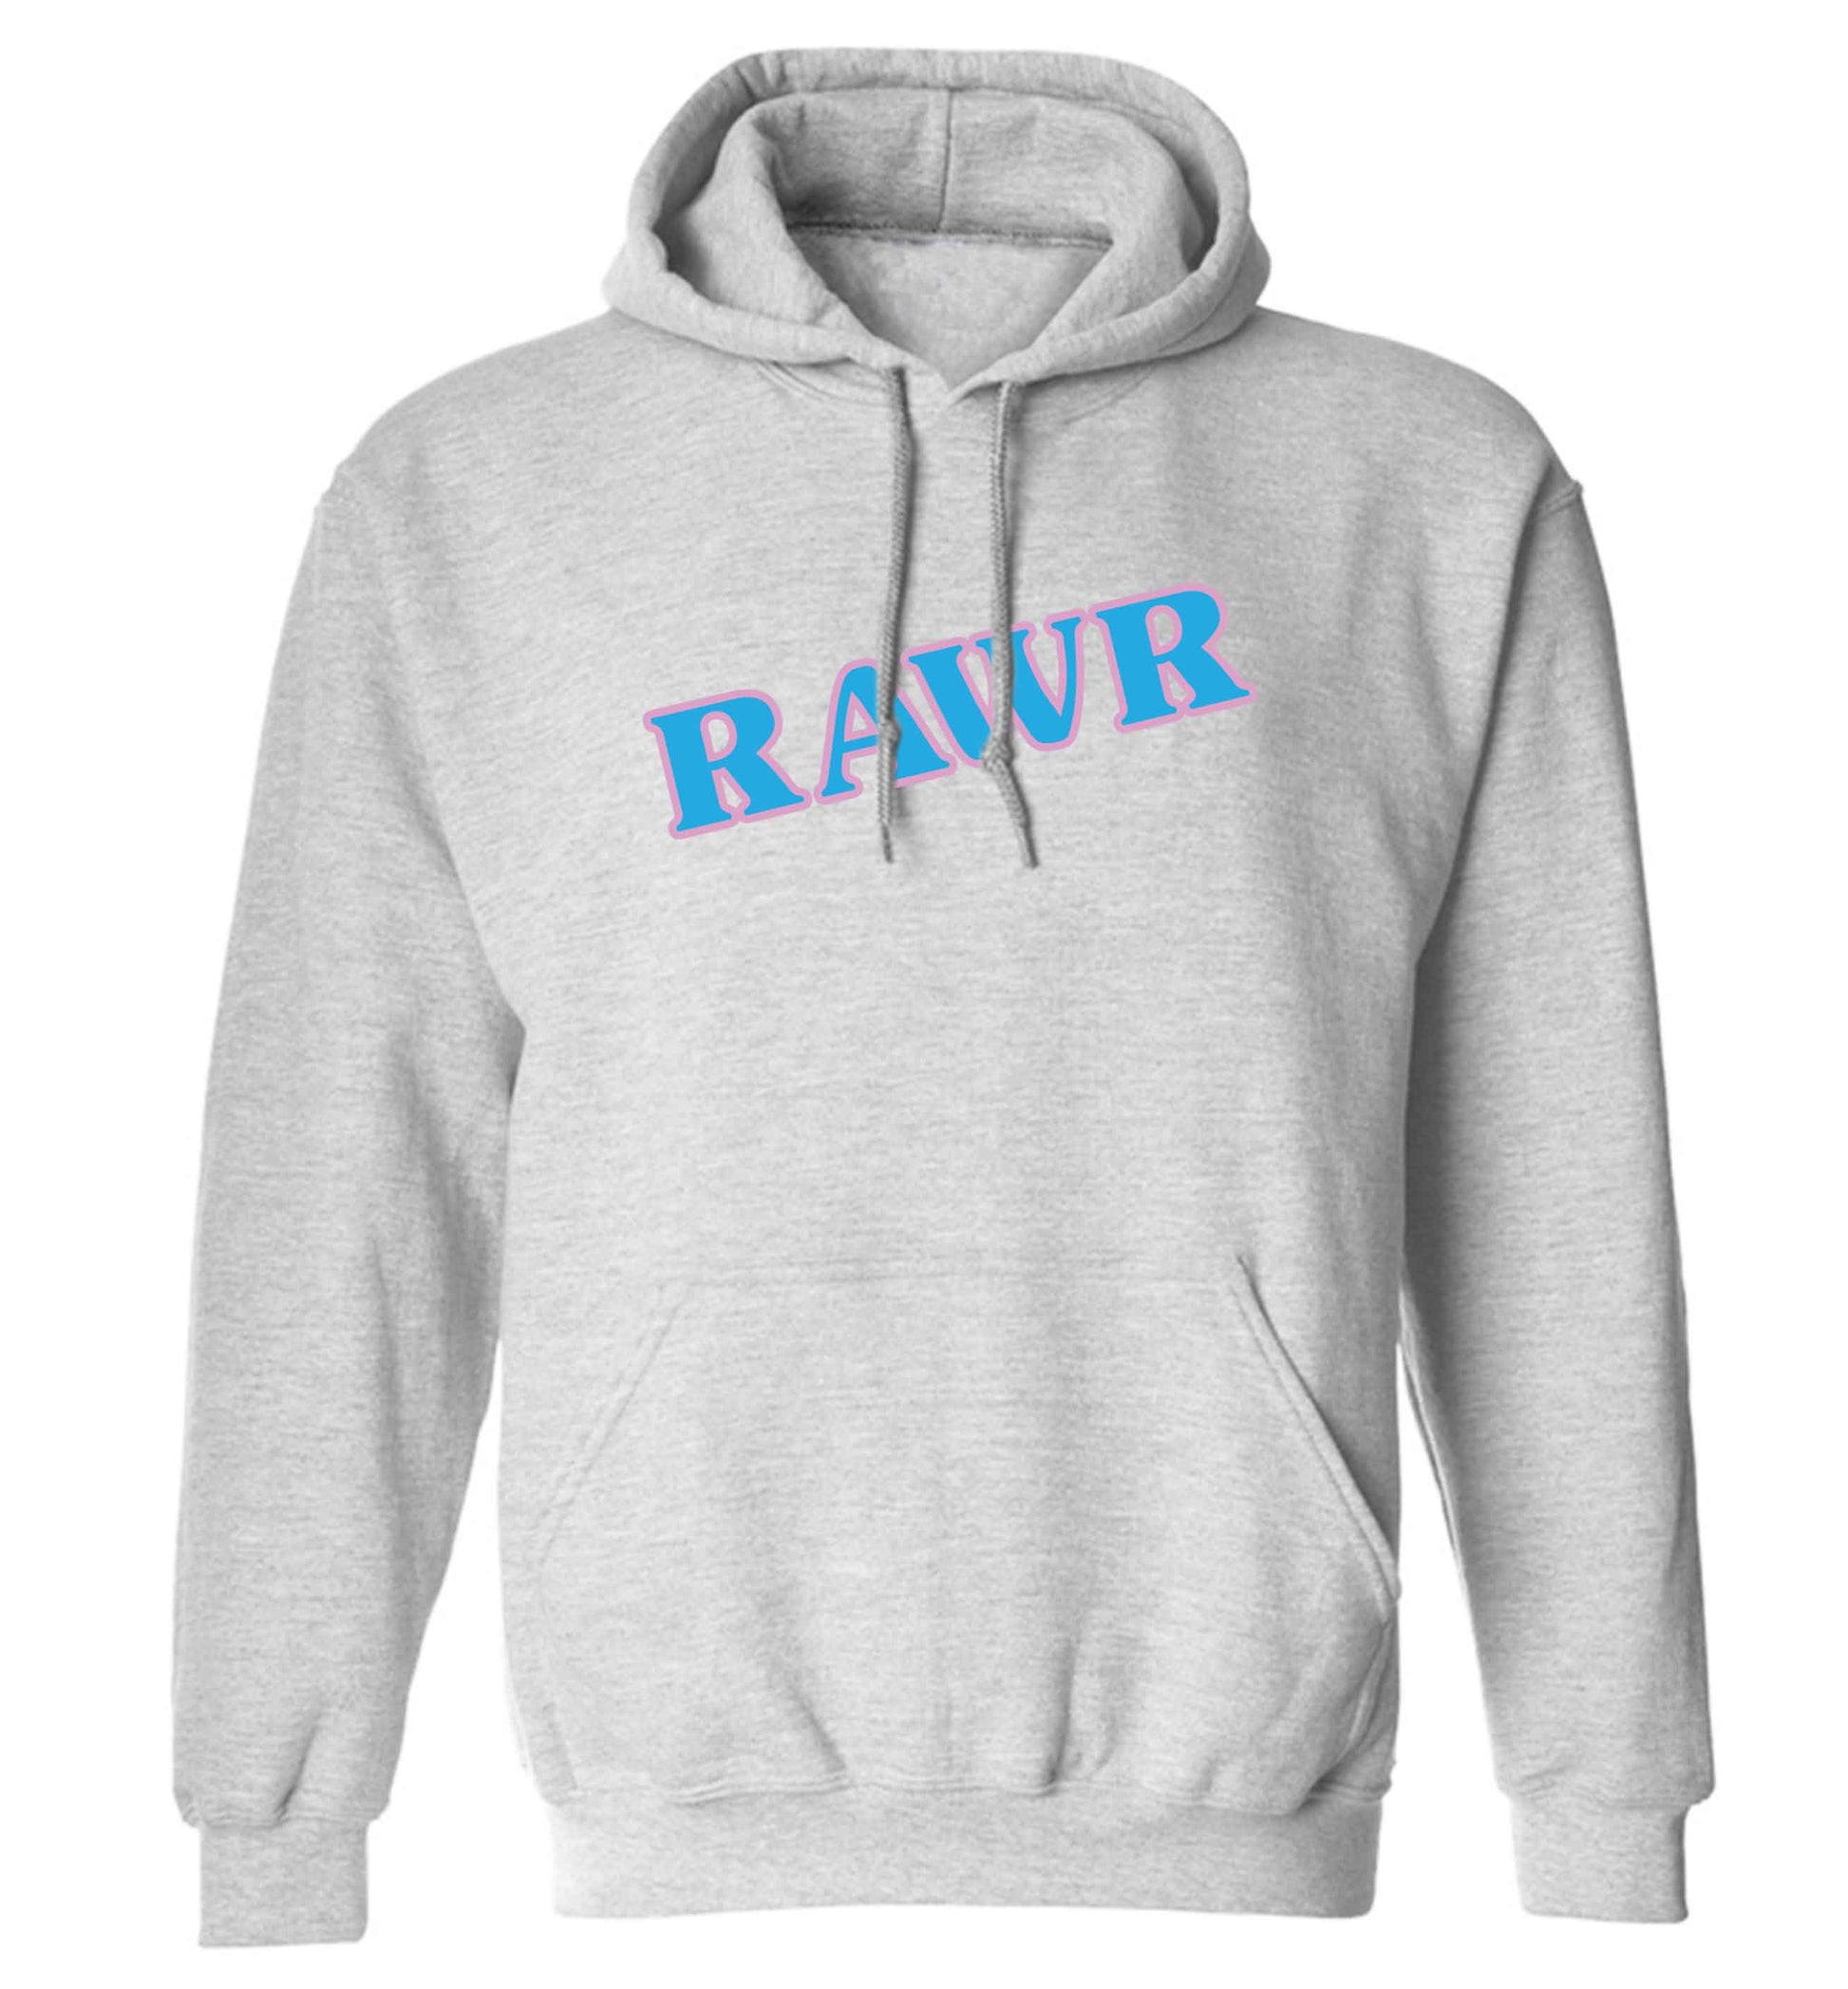 Rawr adults unisex grey hoodie 2XL